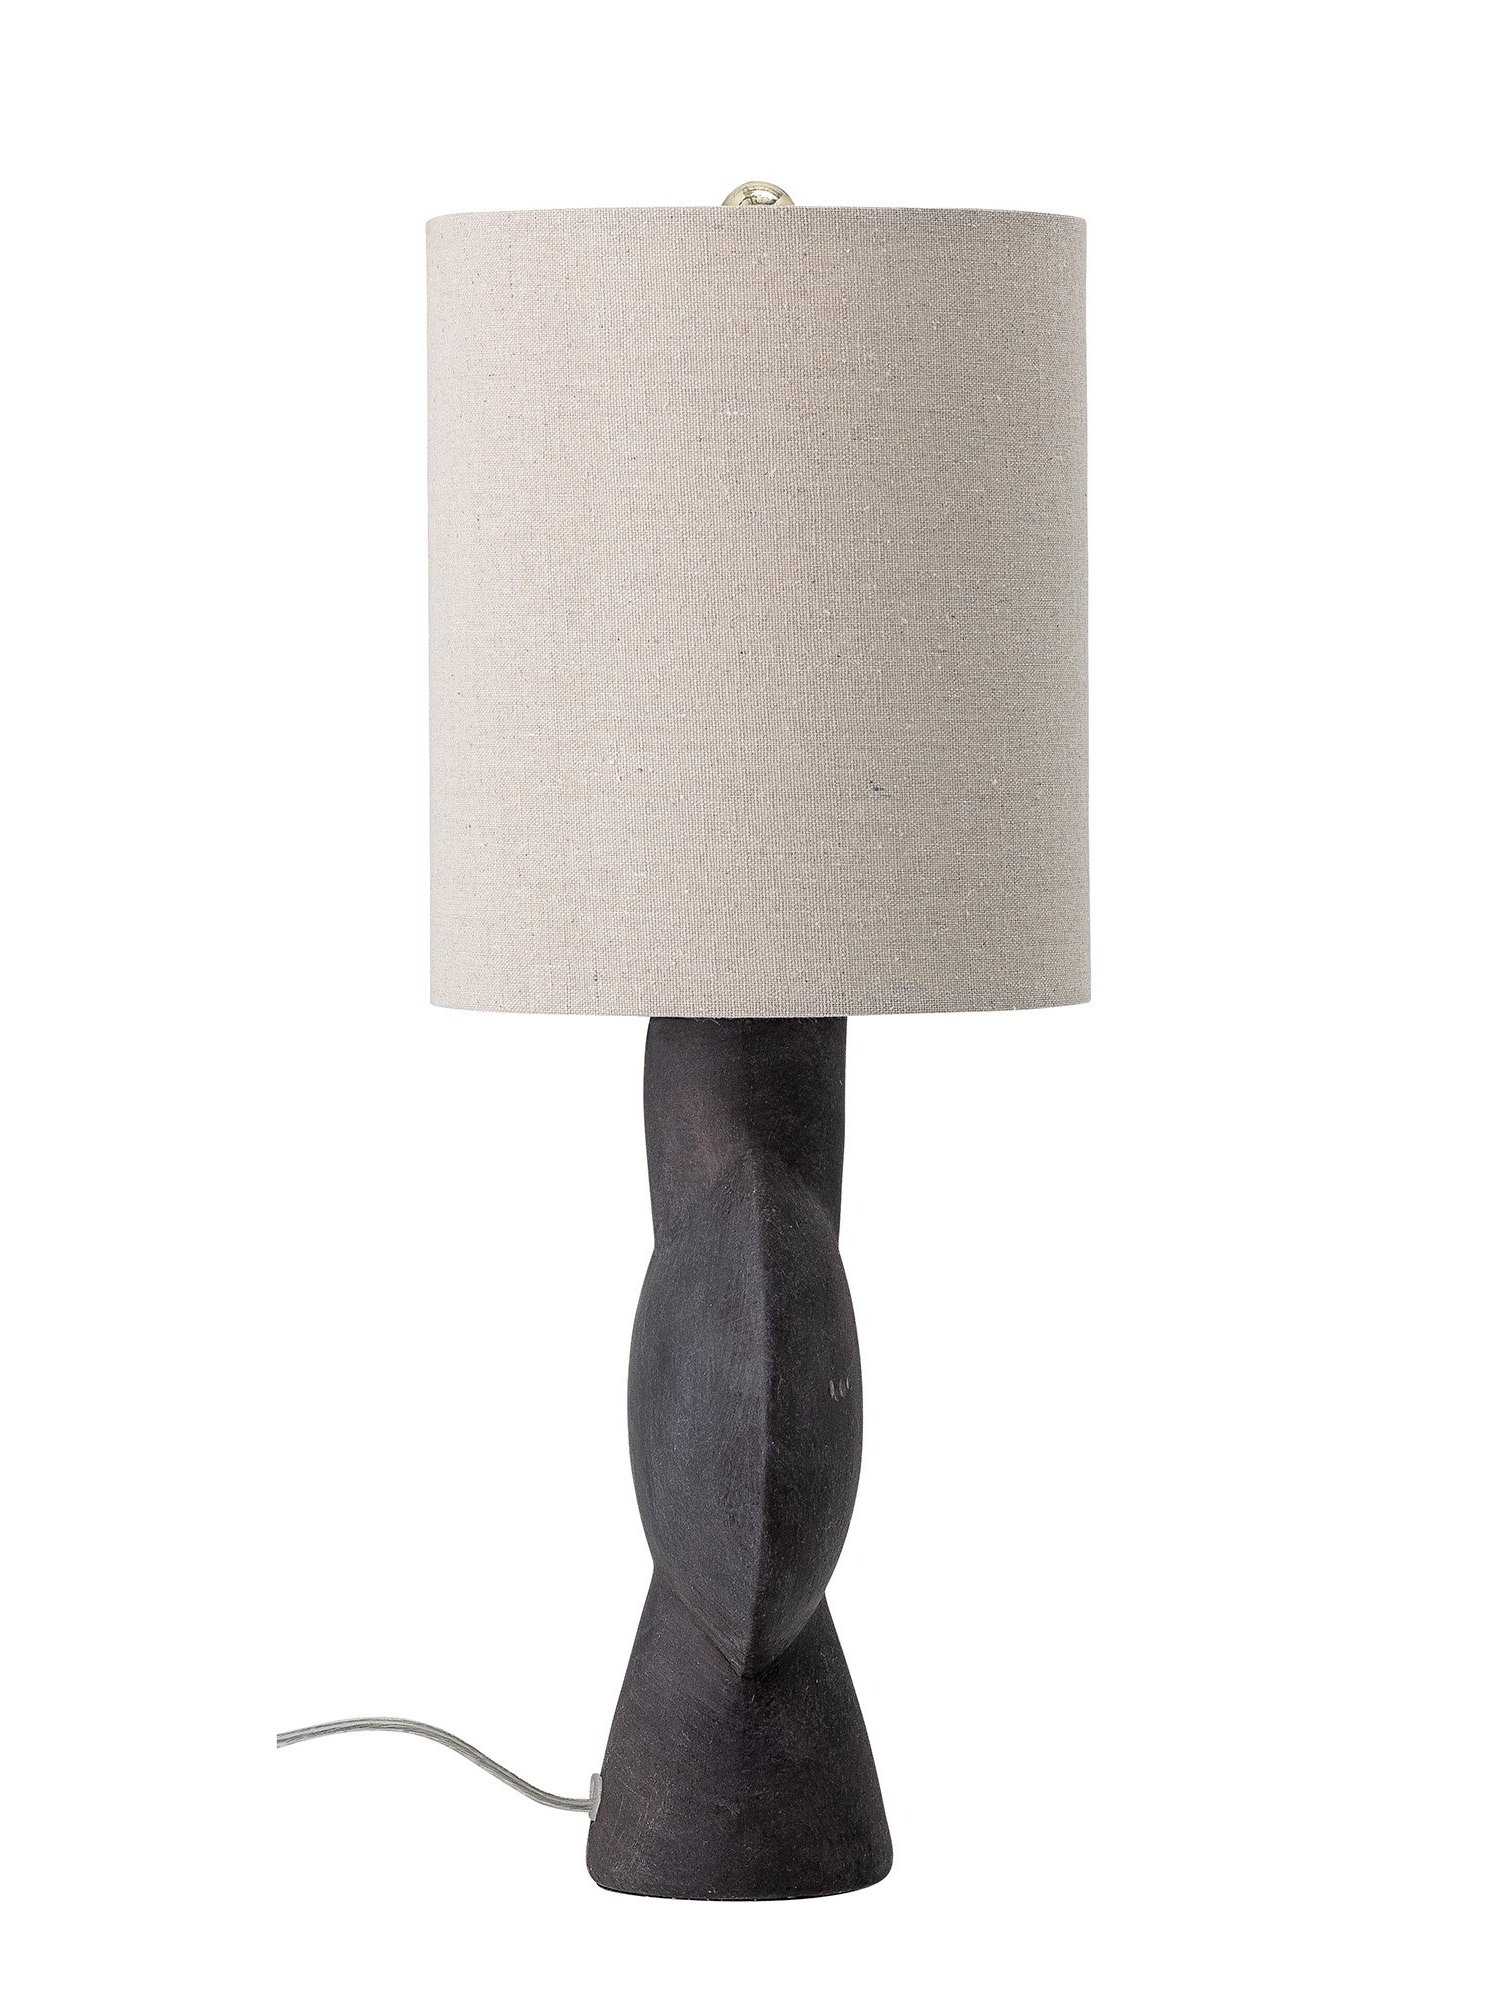 Bloomingville - Brown ceramic table lamp, Hansen